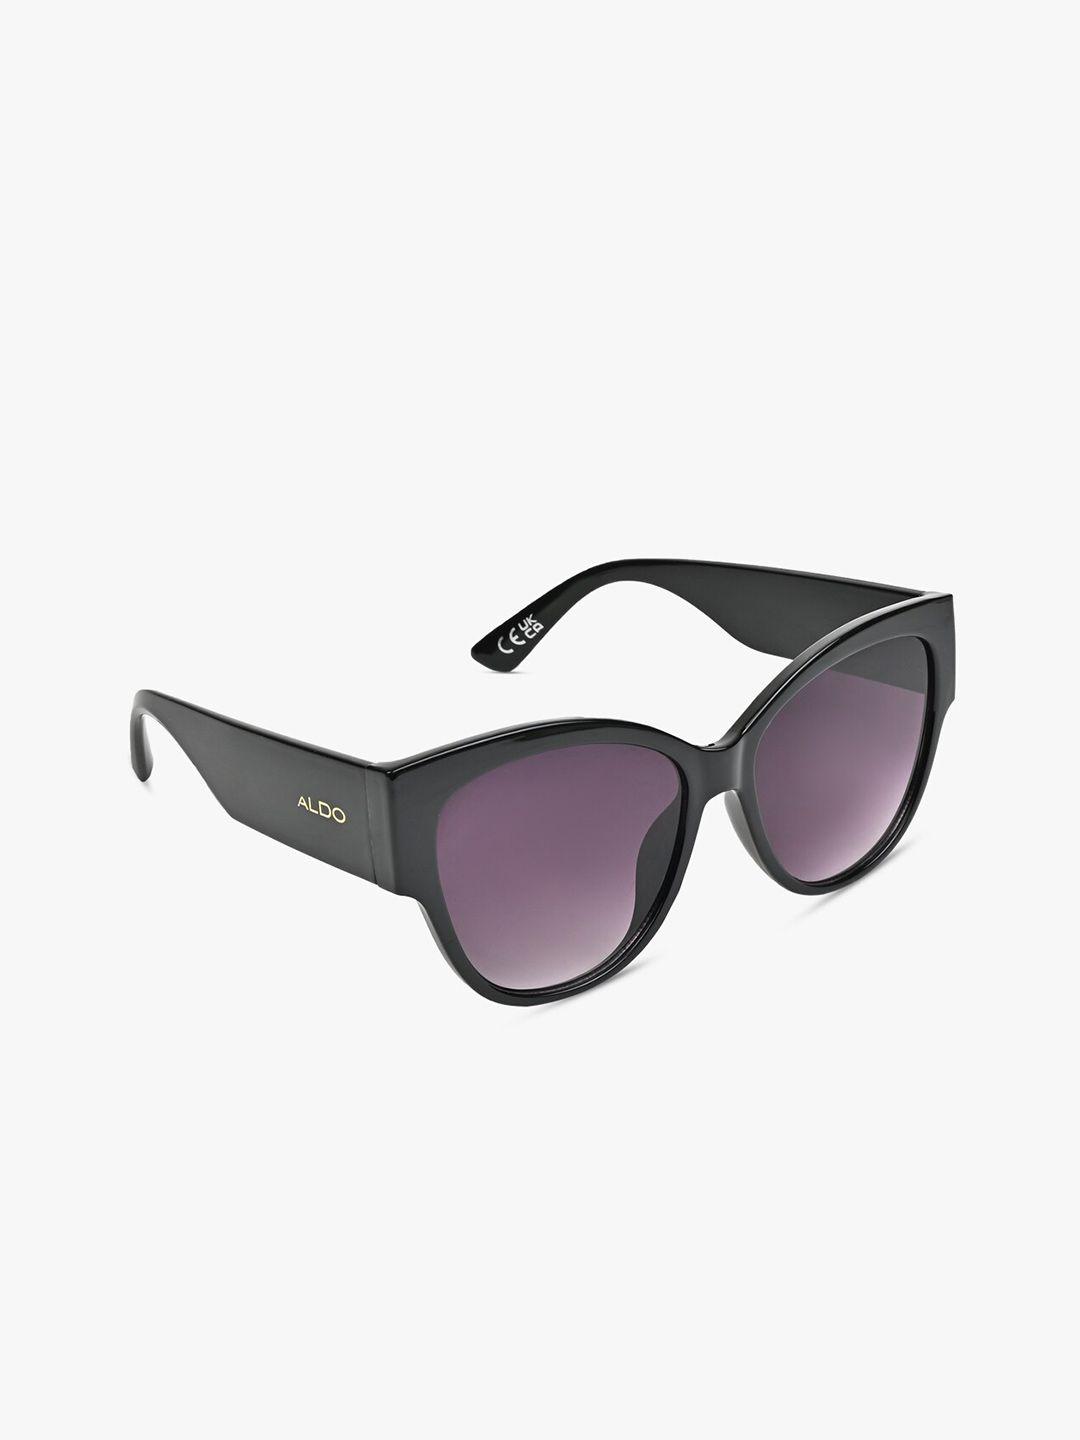 aldo-women-round-sunglasses-ibini001